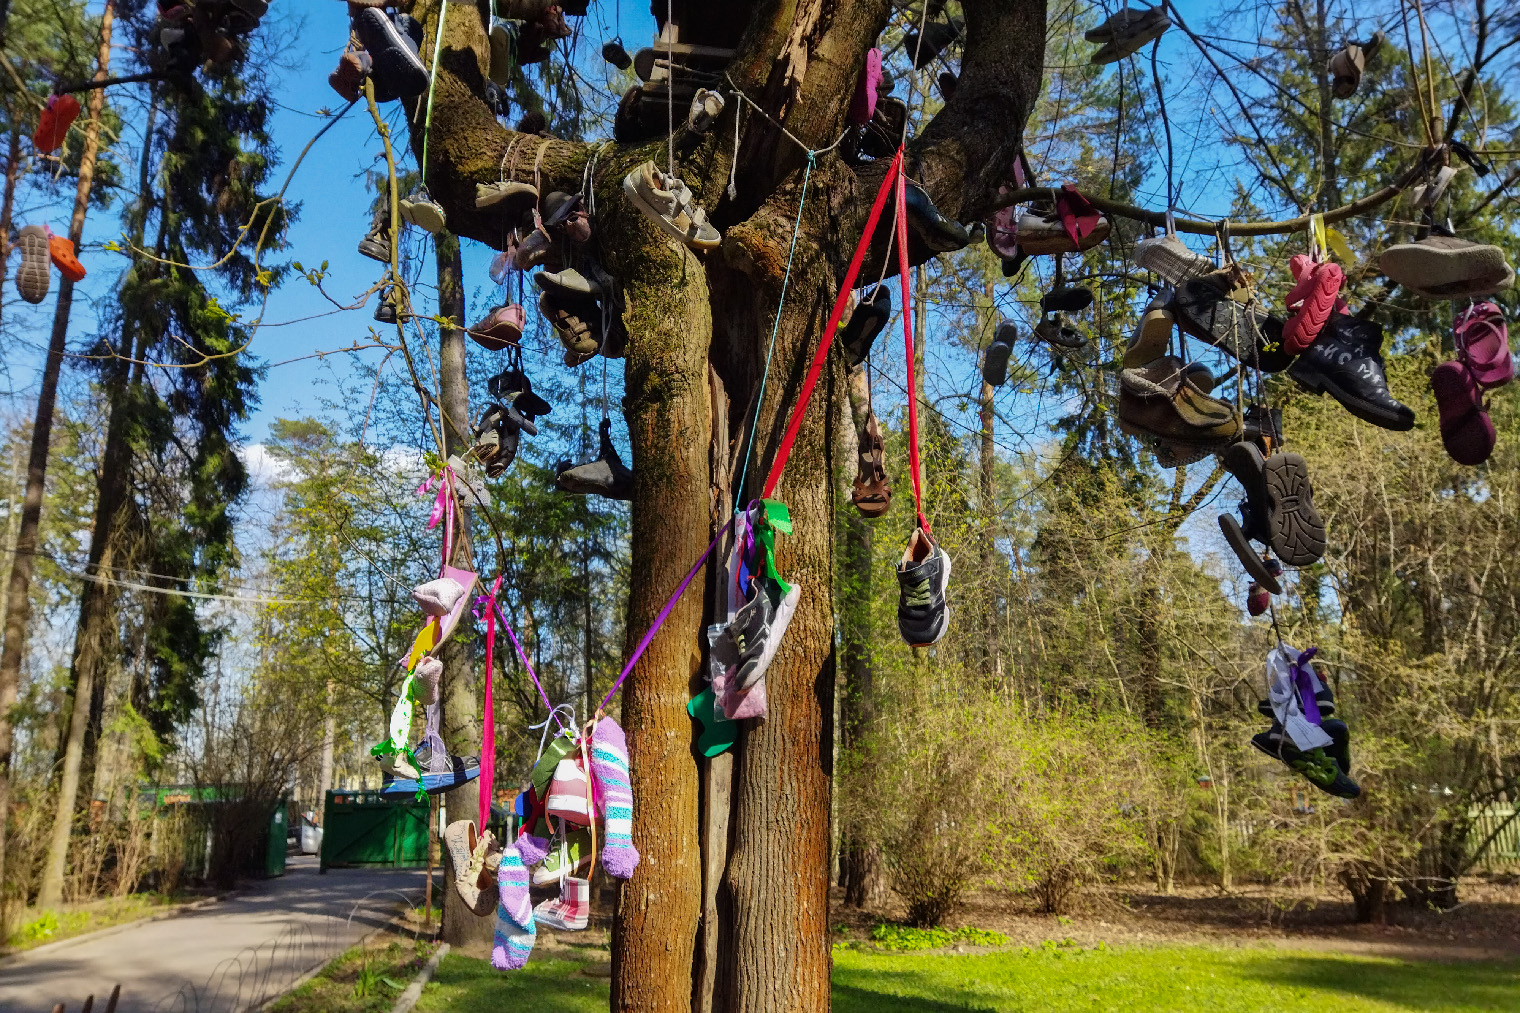 У входа на территорию стоит то самое Чудо⁠-⁠дерево с башмаками из стихотворения Чуковского. Поэт написал его для своей младшей дочки Муси